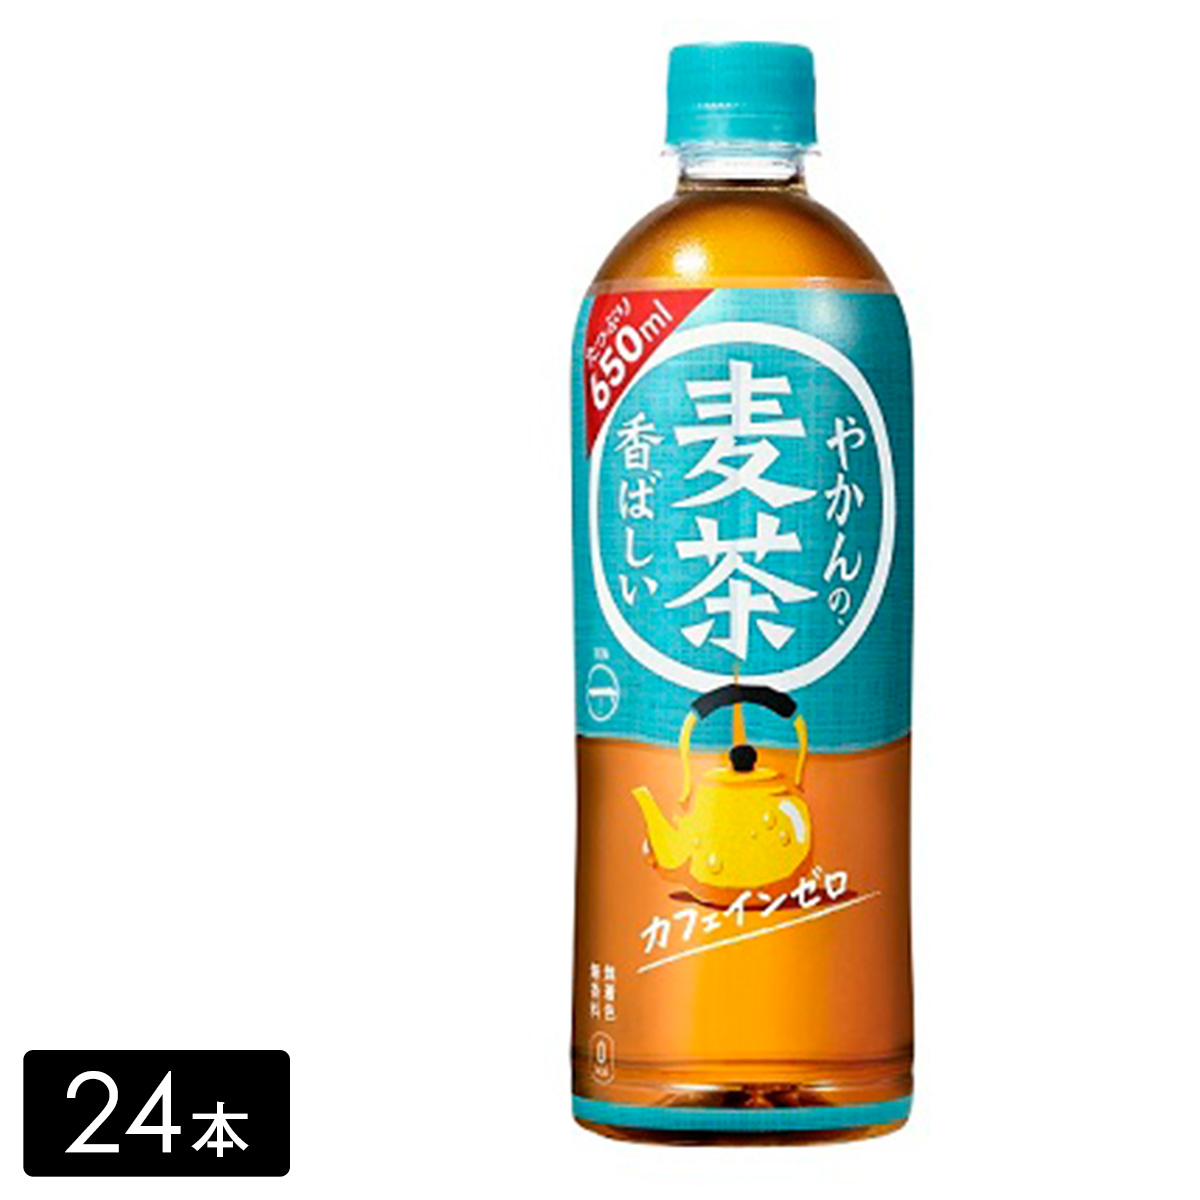 【送料無料 + 24】やかんの麦茶 from 一(はじめ) 650mL×24本(1箱)